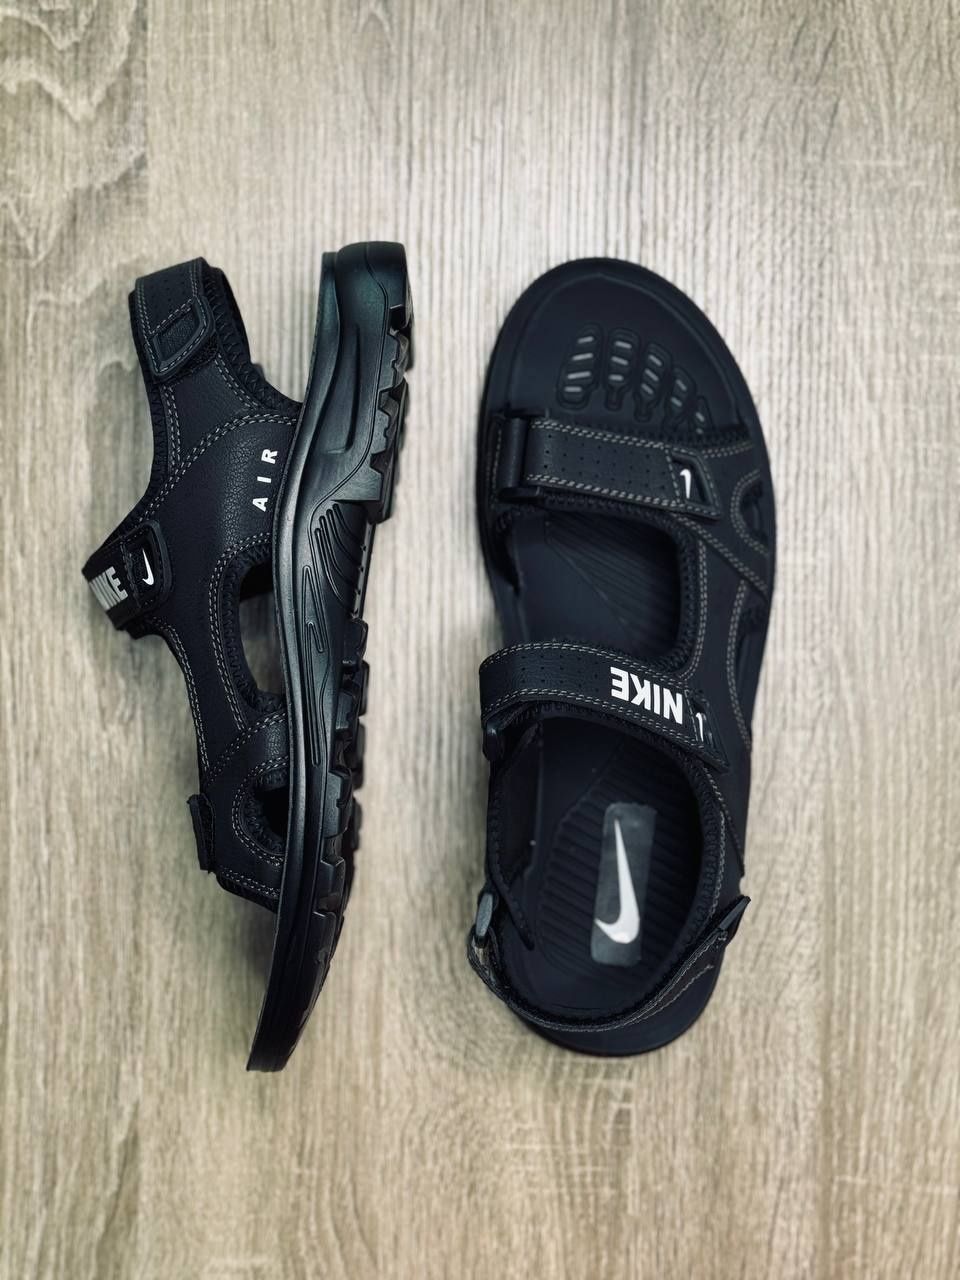 МУЖСКИЕ сандалии Nike сандалии чёрного цвета Найк 40-45